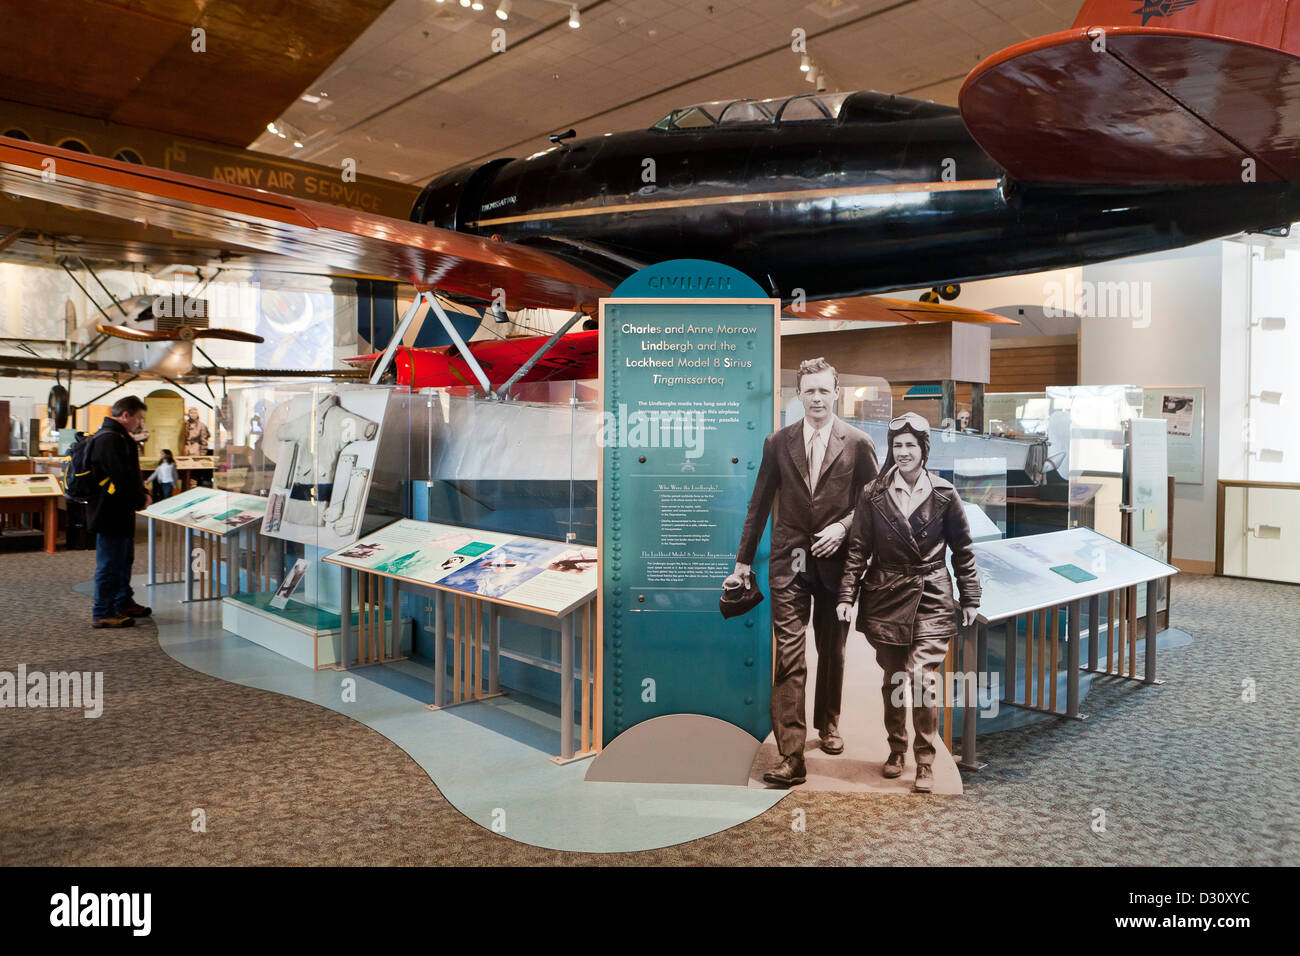 Charles y Anne Morrow Lindbergh y el Modelo 8 de Lockheed Sirius Tingmissartoq exhibición en el Museo Nacional del Aire y del espacio Foto de stock